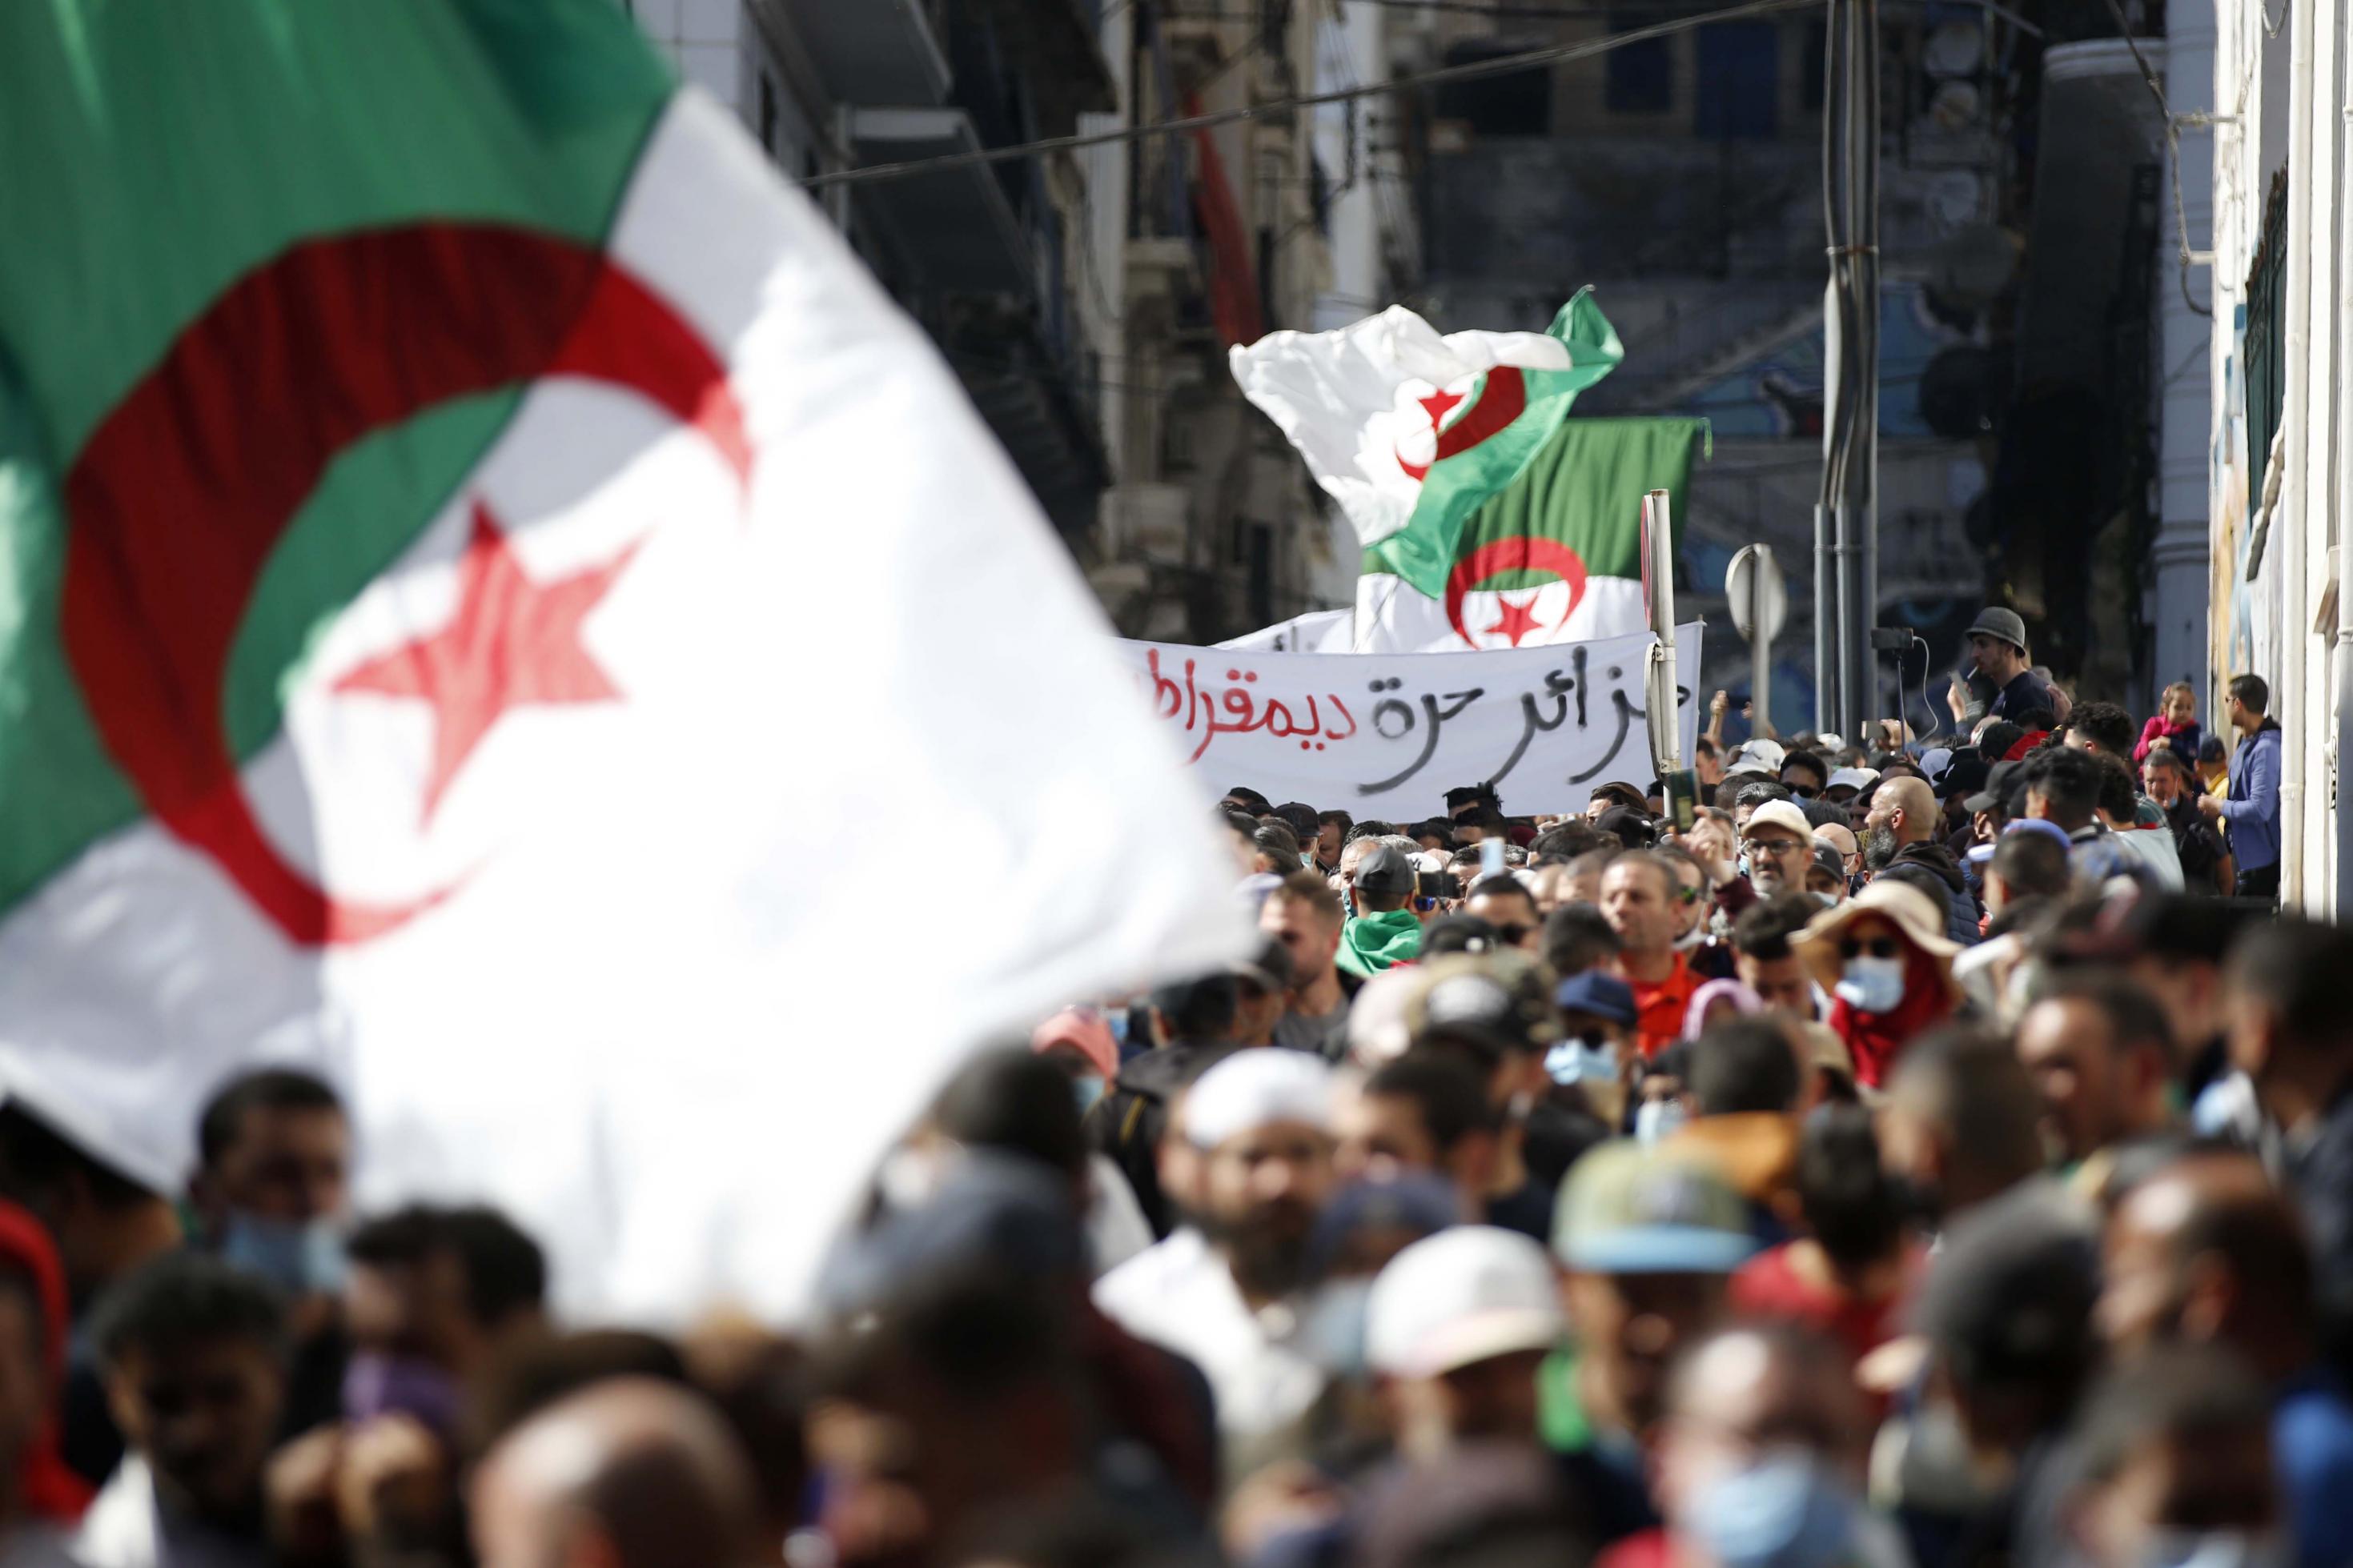 Demonstranten in einer engen Straße in Algier schwenken große algerische Fahnen. Im Hintergrund ist ein arabischsprachiges Transparent zu sehen.